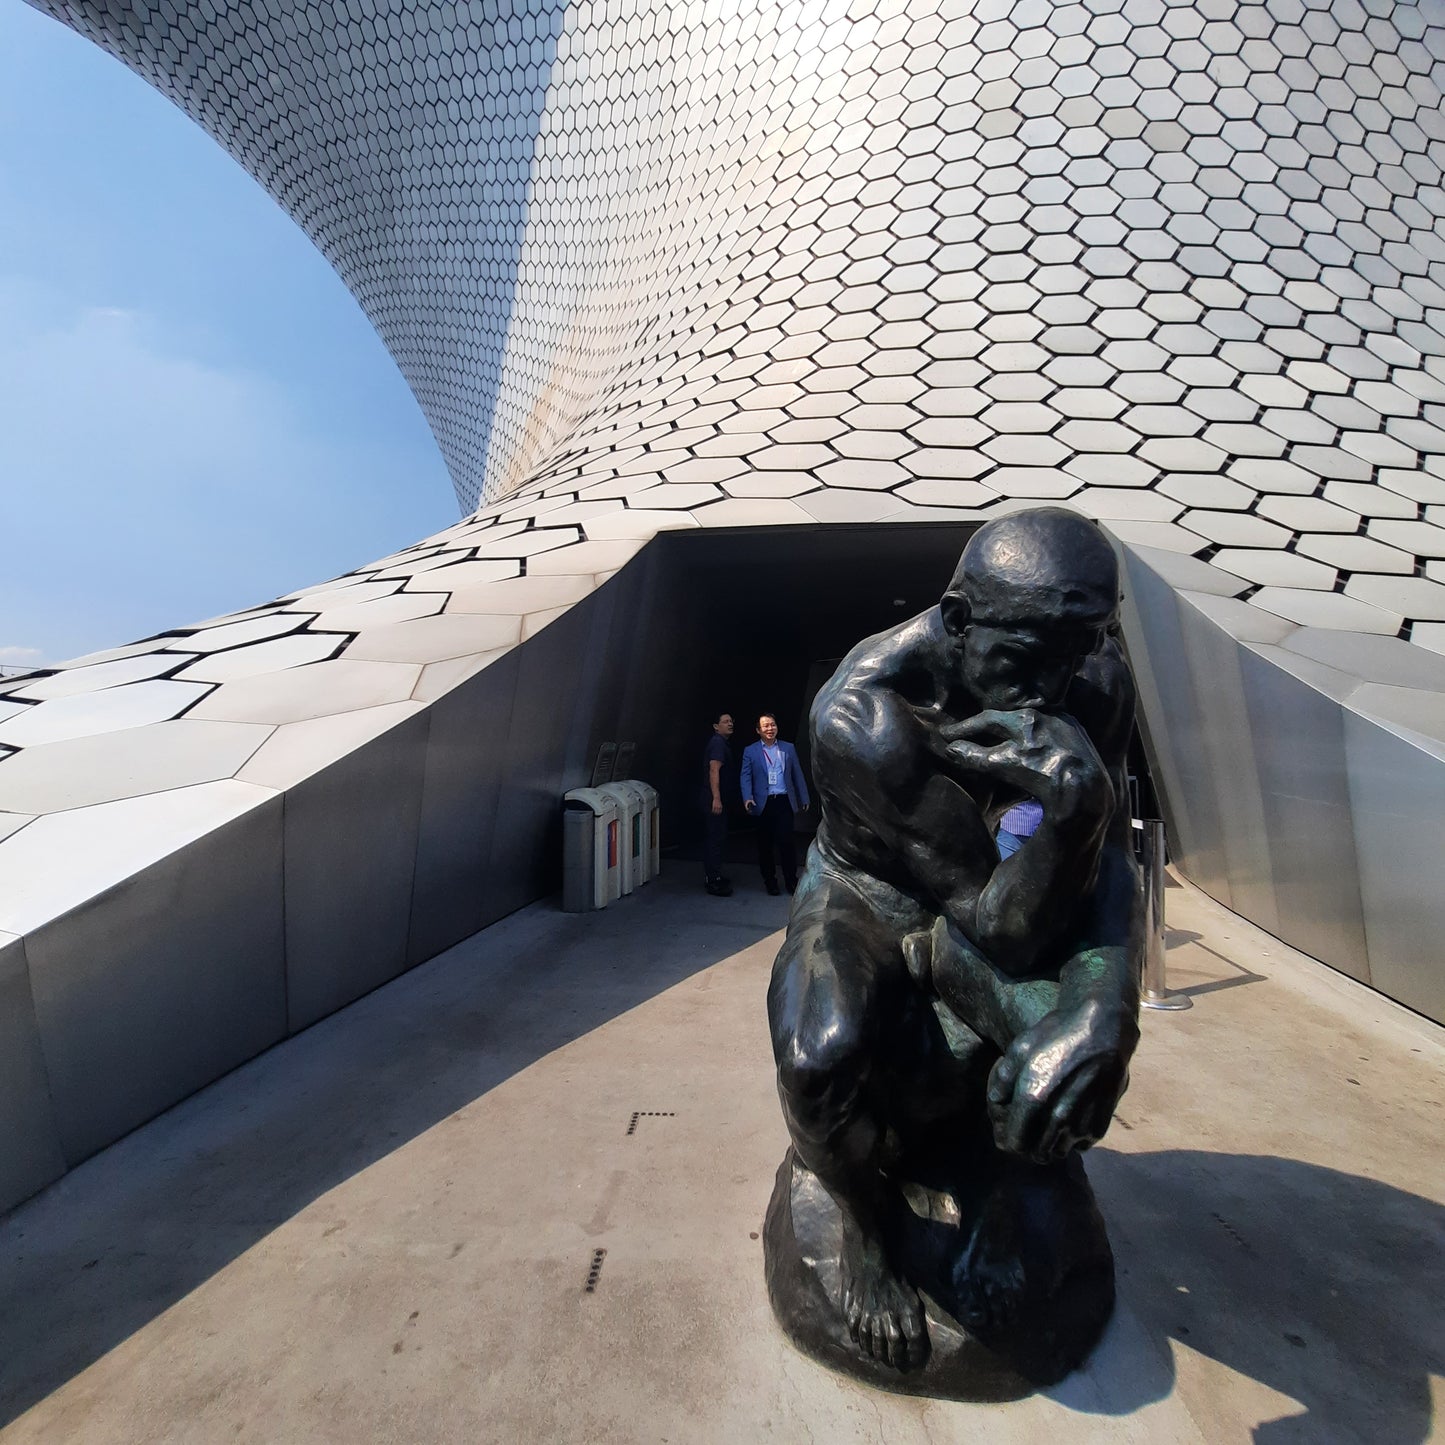 Musée Soumaya et le penseur de Rodin (3 photos)